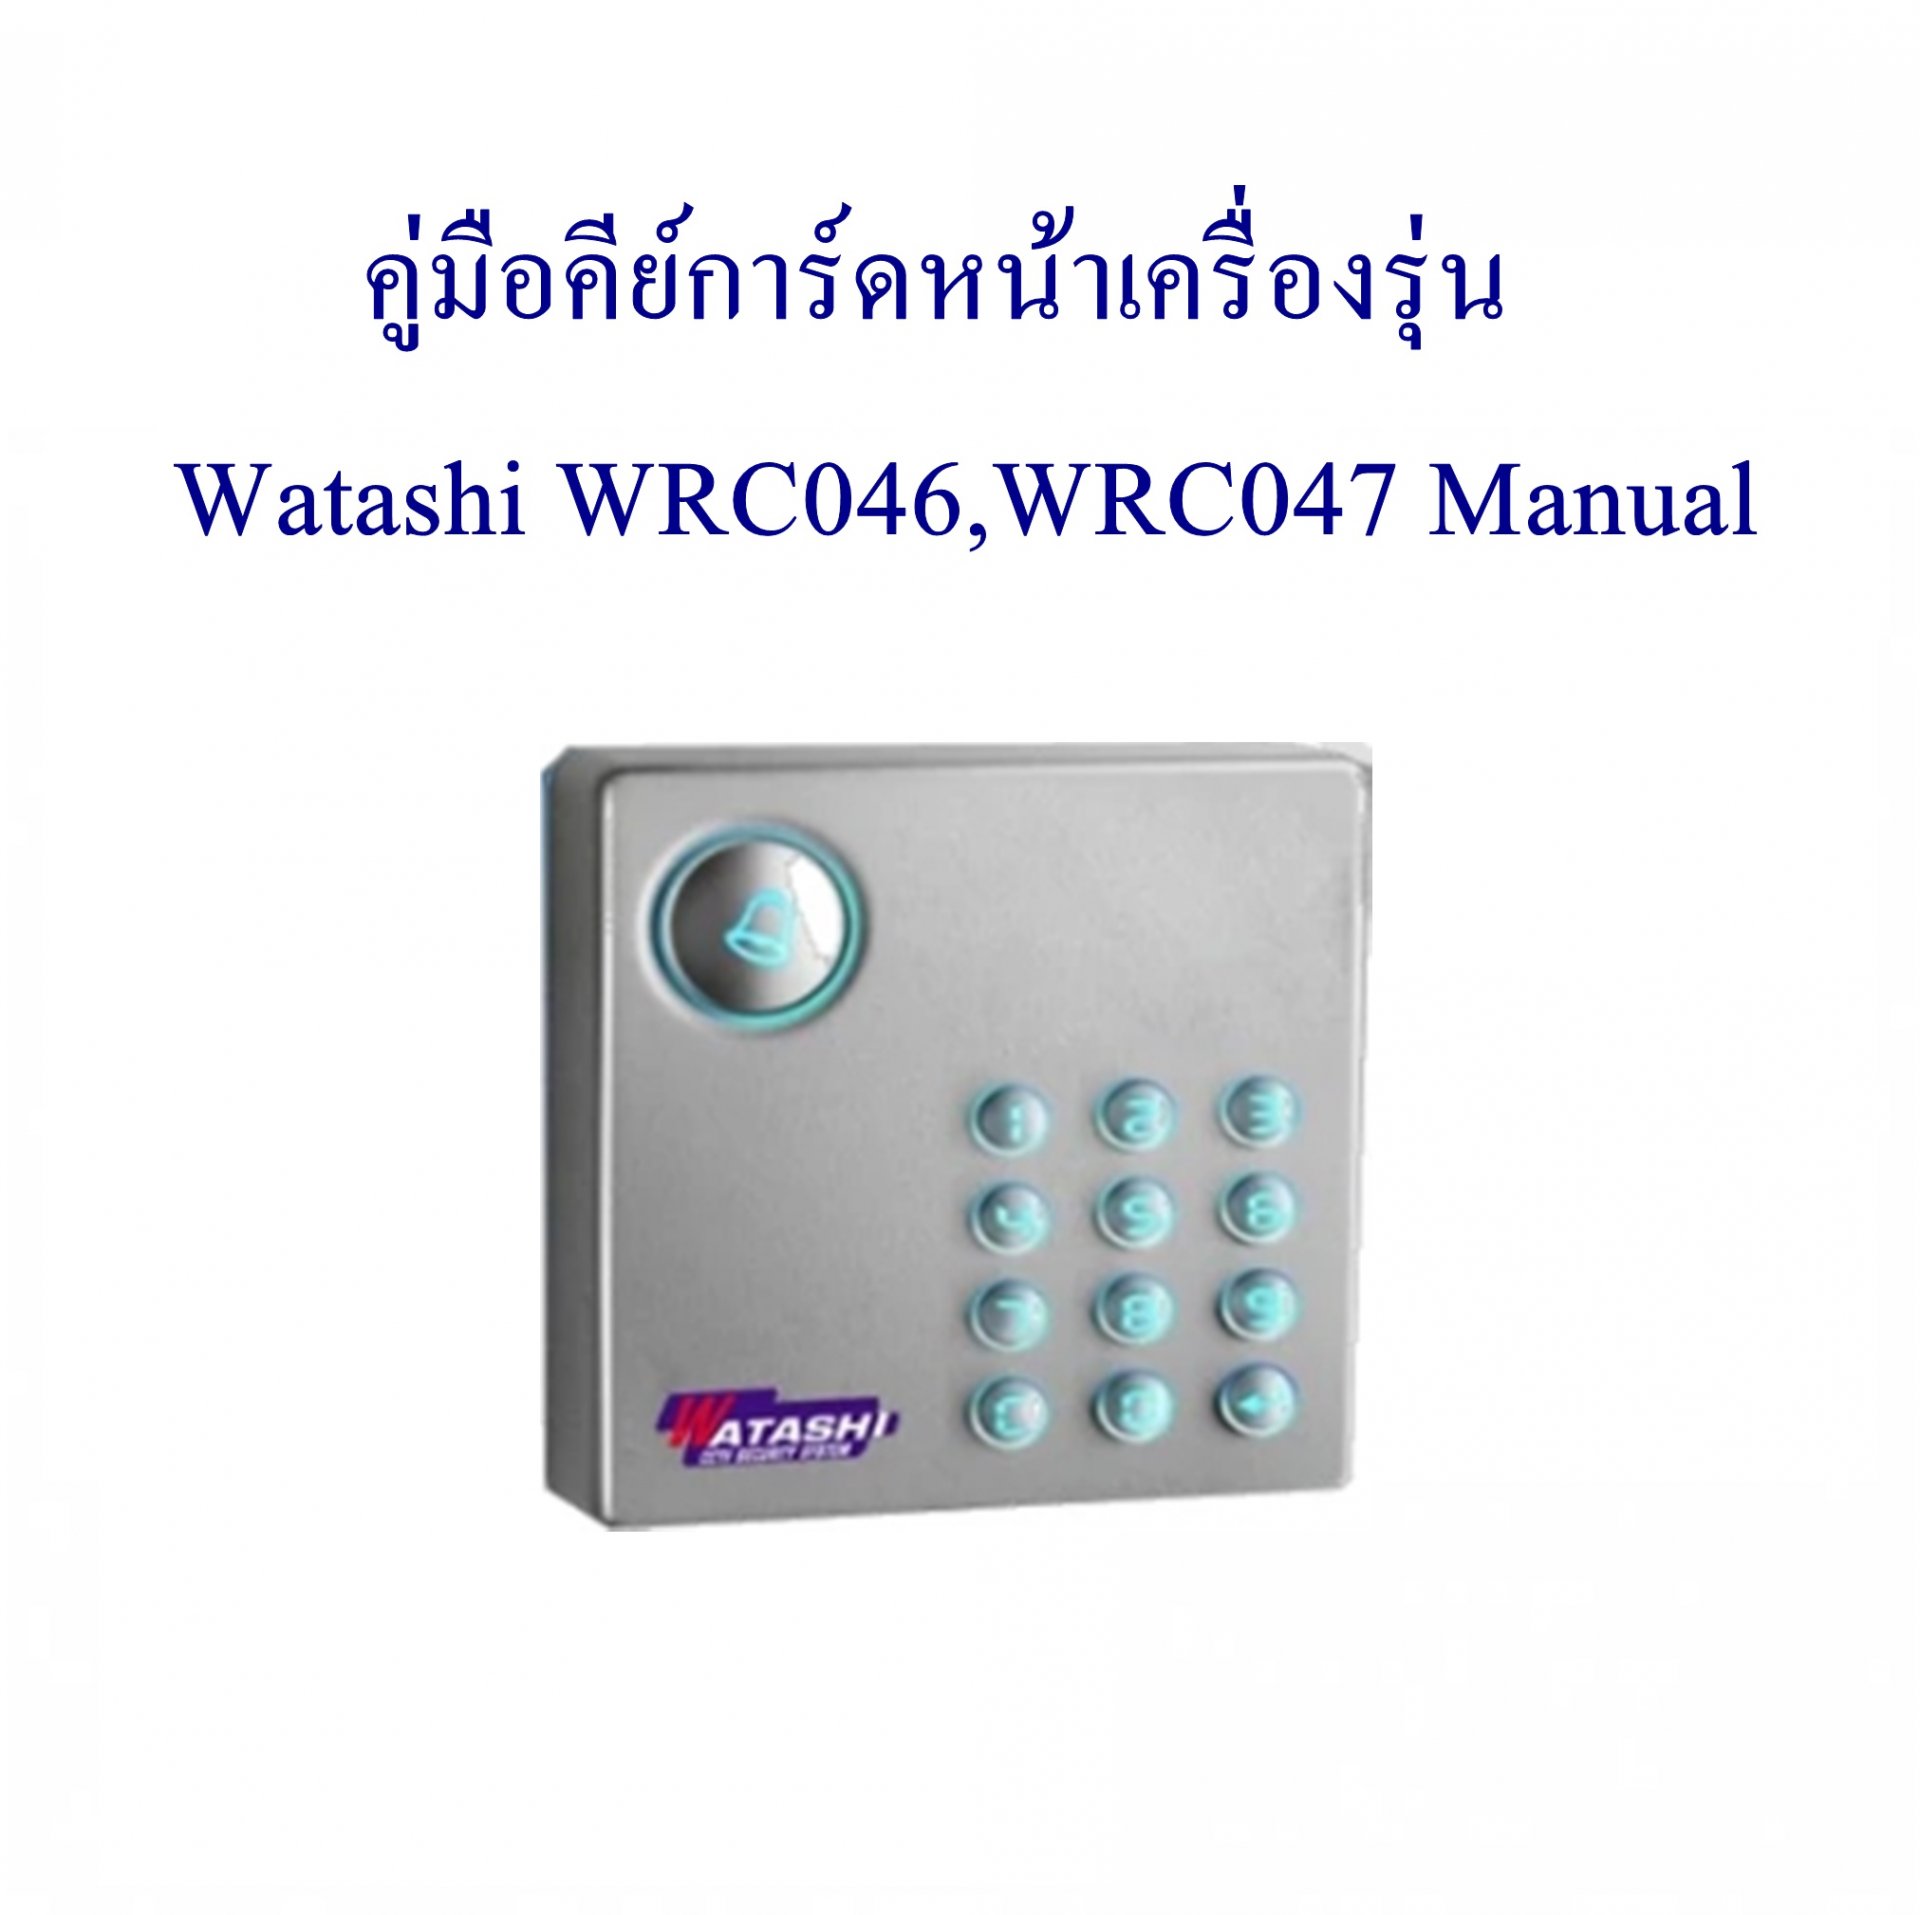 คู่มือคีย์การ์ดหน้าเครื่องรุ่น Watashi WRC046,WRC047 Manual 